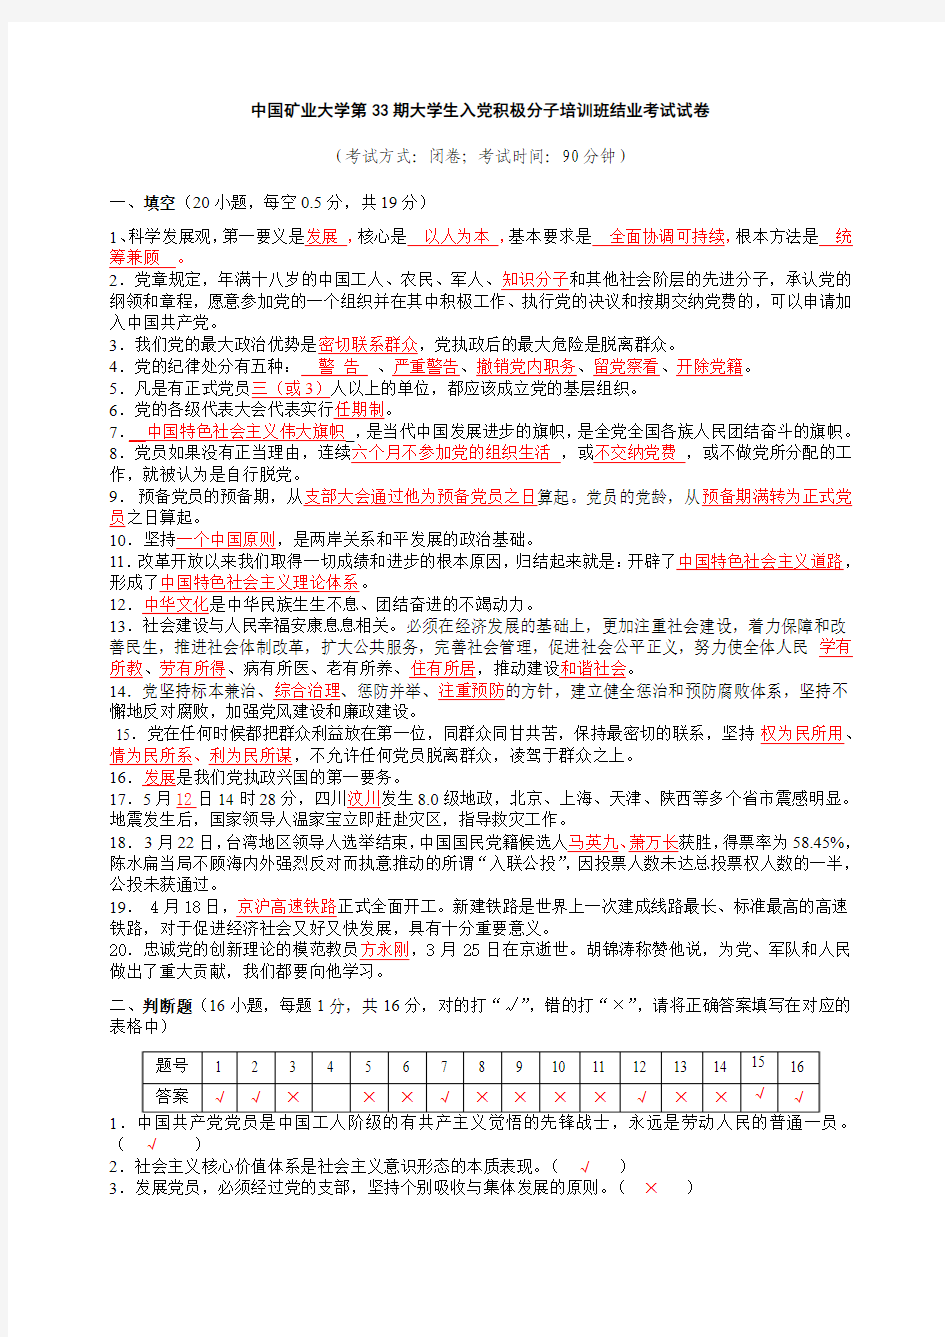 中国矿业大学第33、34、35、36、37期入党积极分子培训班结业考试试卷大集合